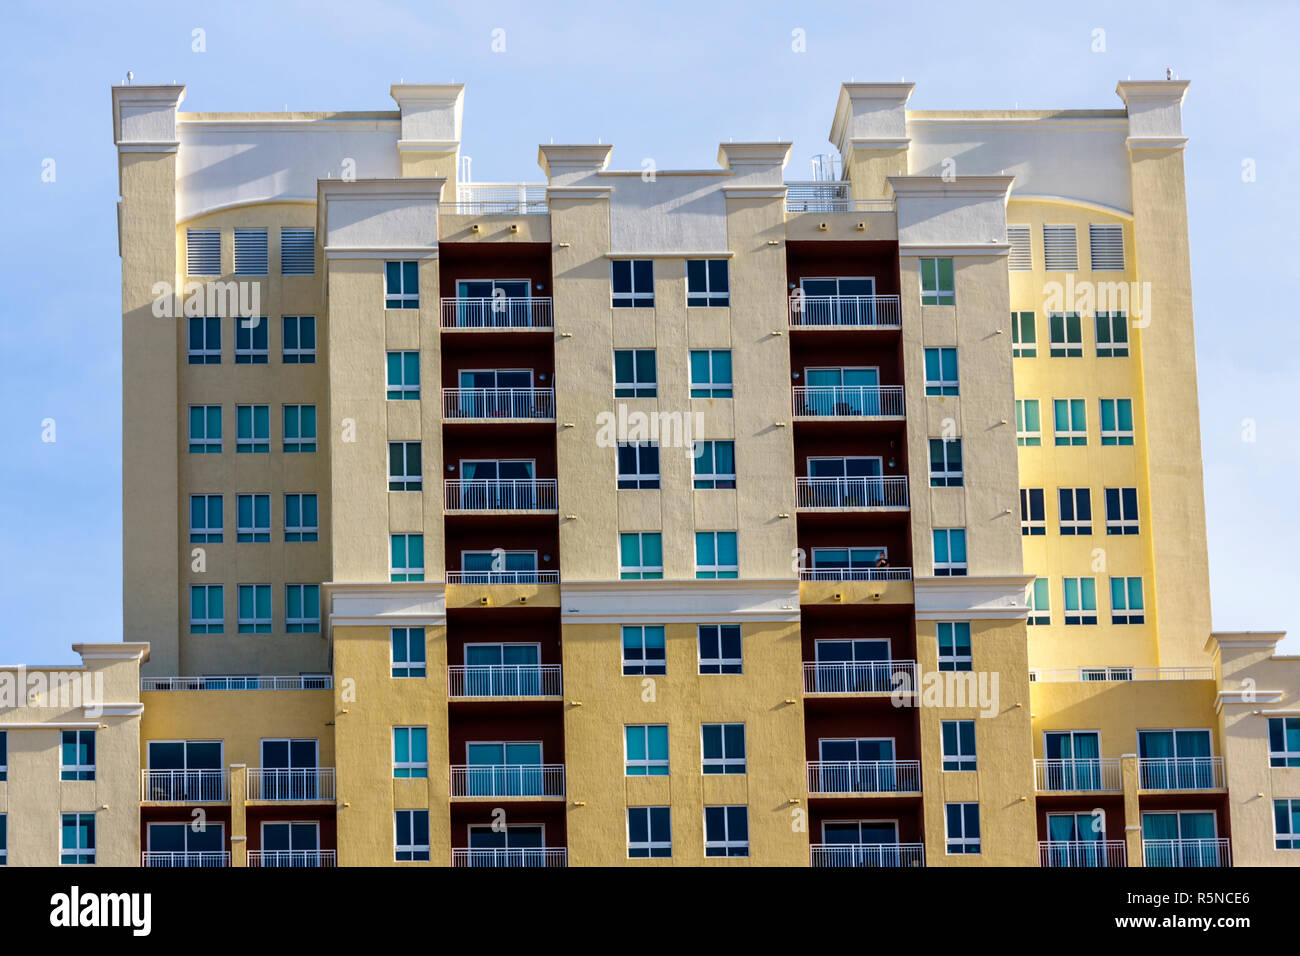 Miami Florida, Coral Gables, grattacieli grattacieli edifici edificio condominio appartamenti residenziali alloggio, balcone, alto, Foto Stock